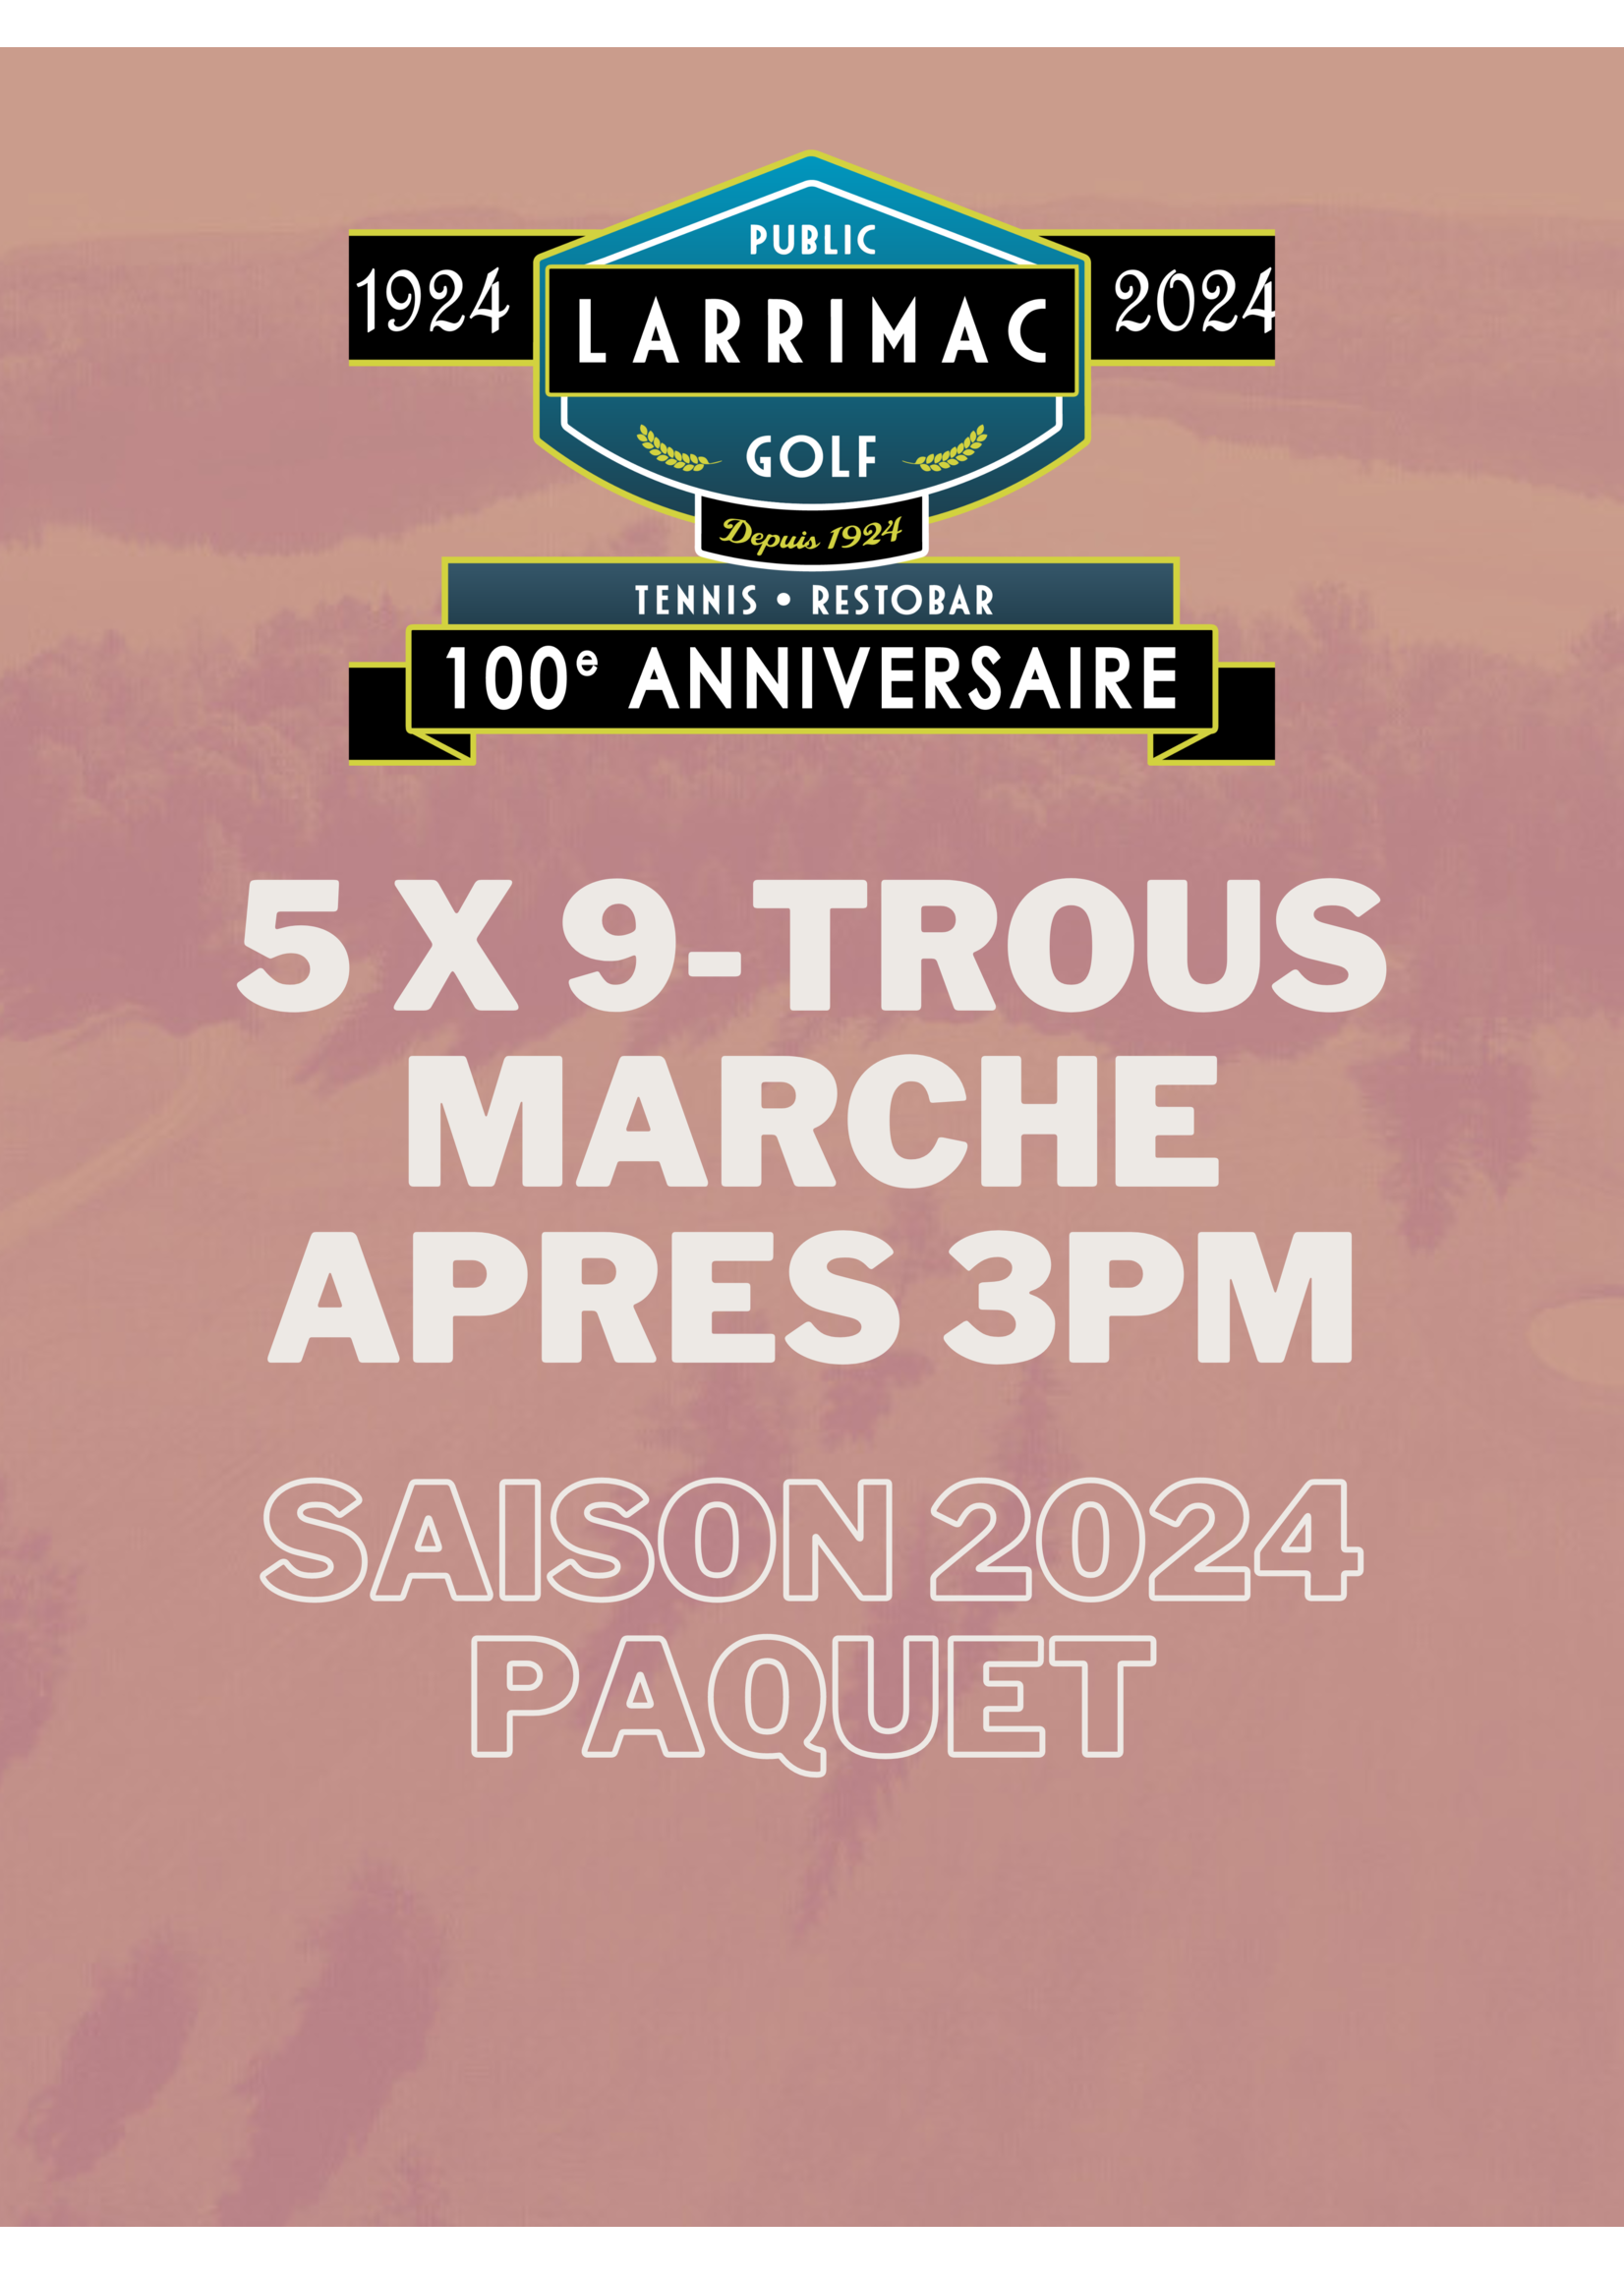 2024 packages 5x 9 Trous Forfait Marche Twilight Après 15h (Saison 2024 10% de réduction !)